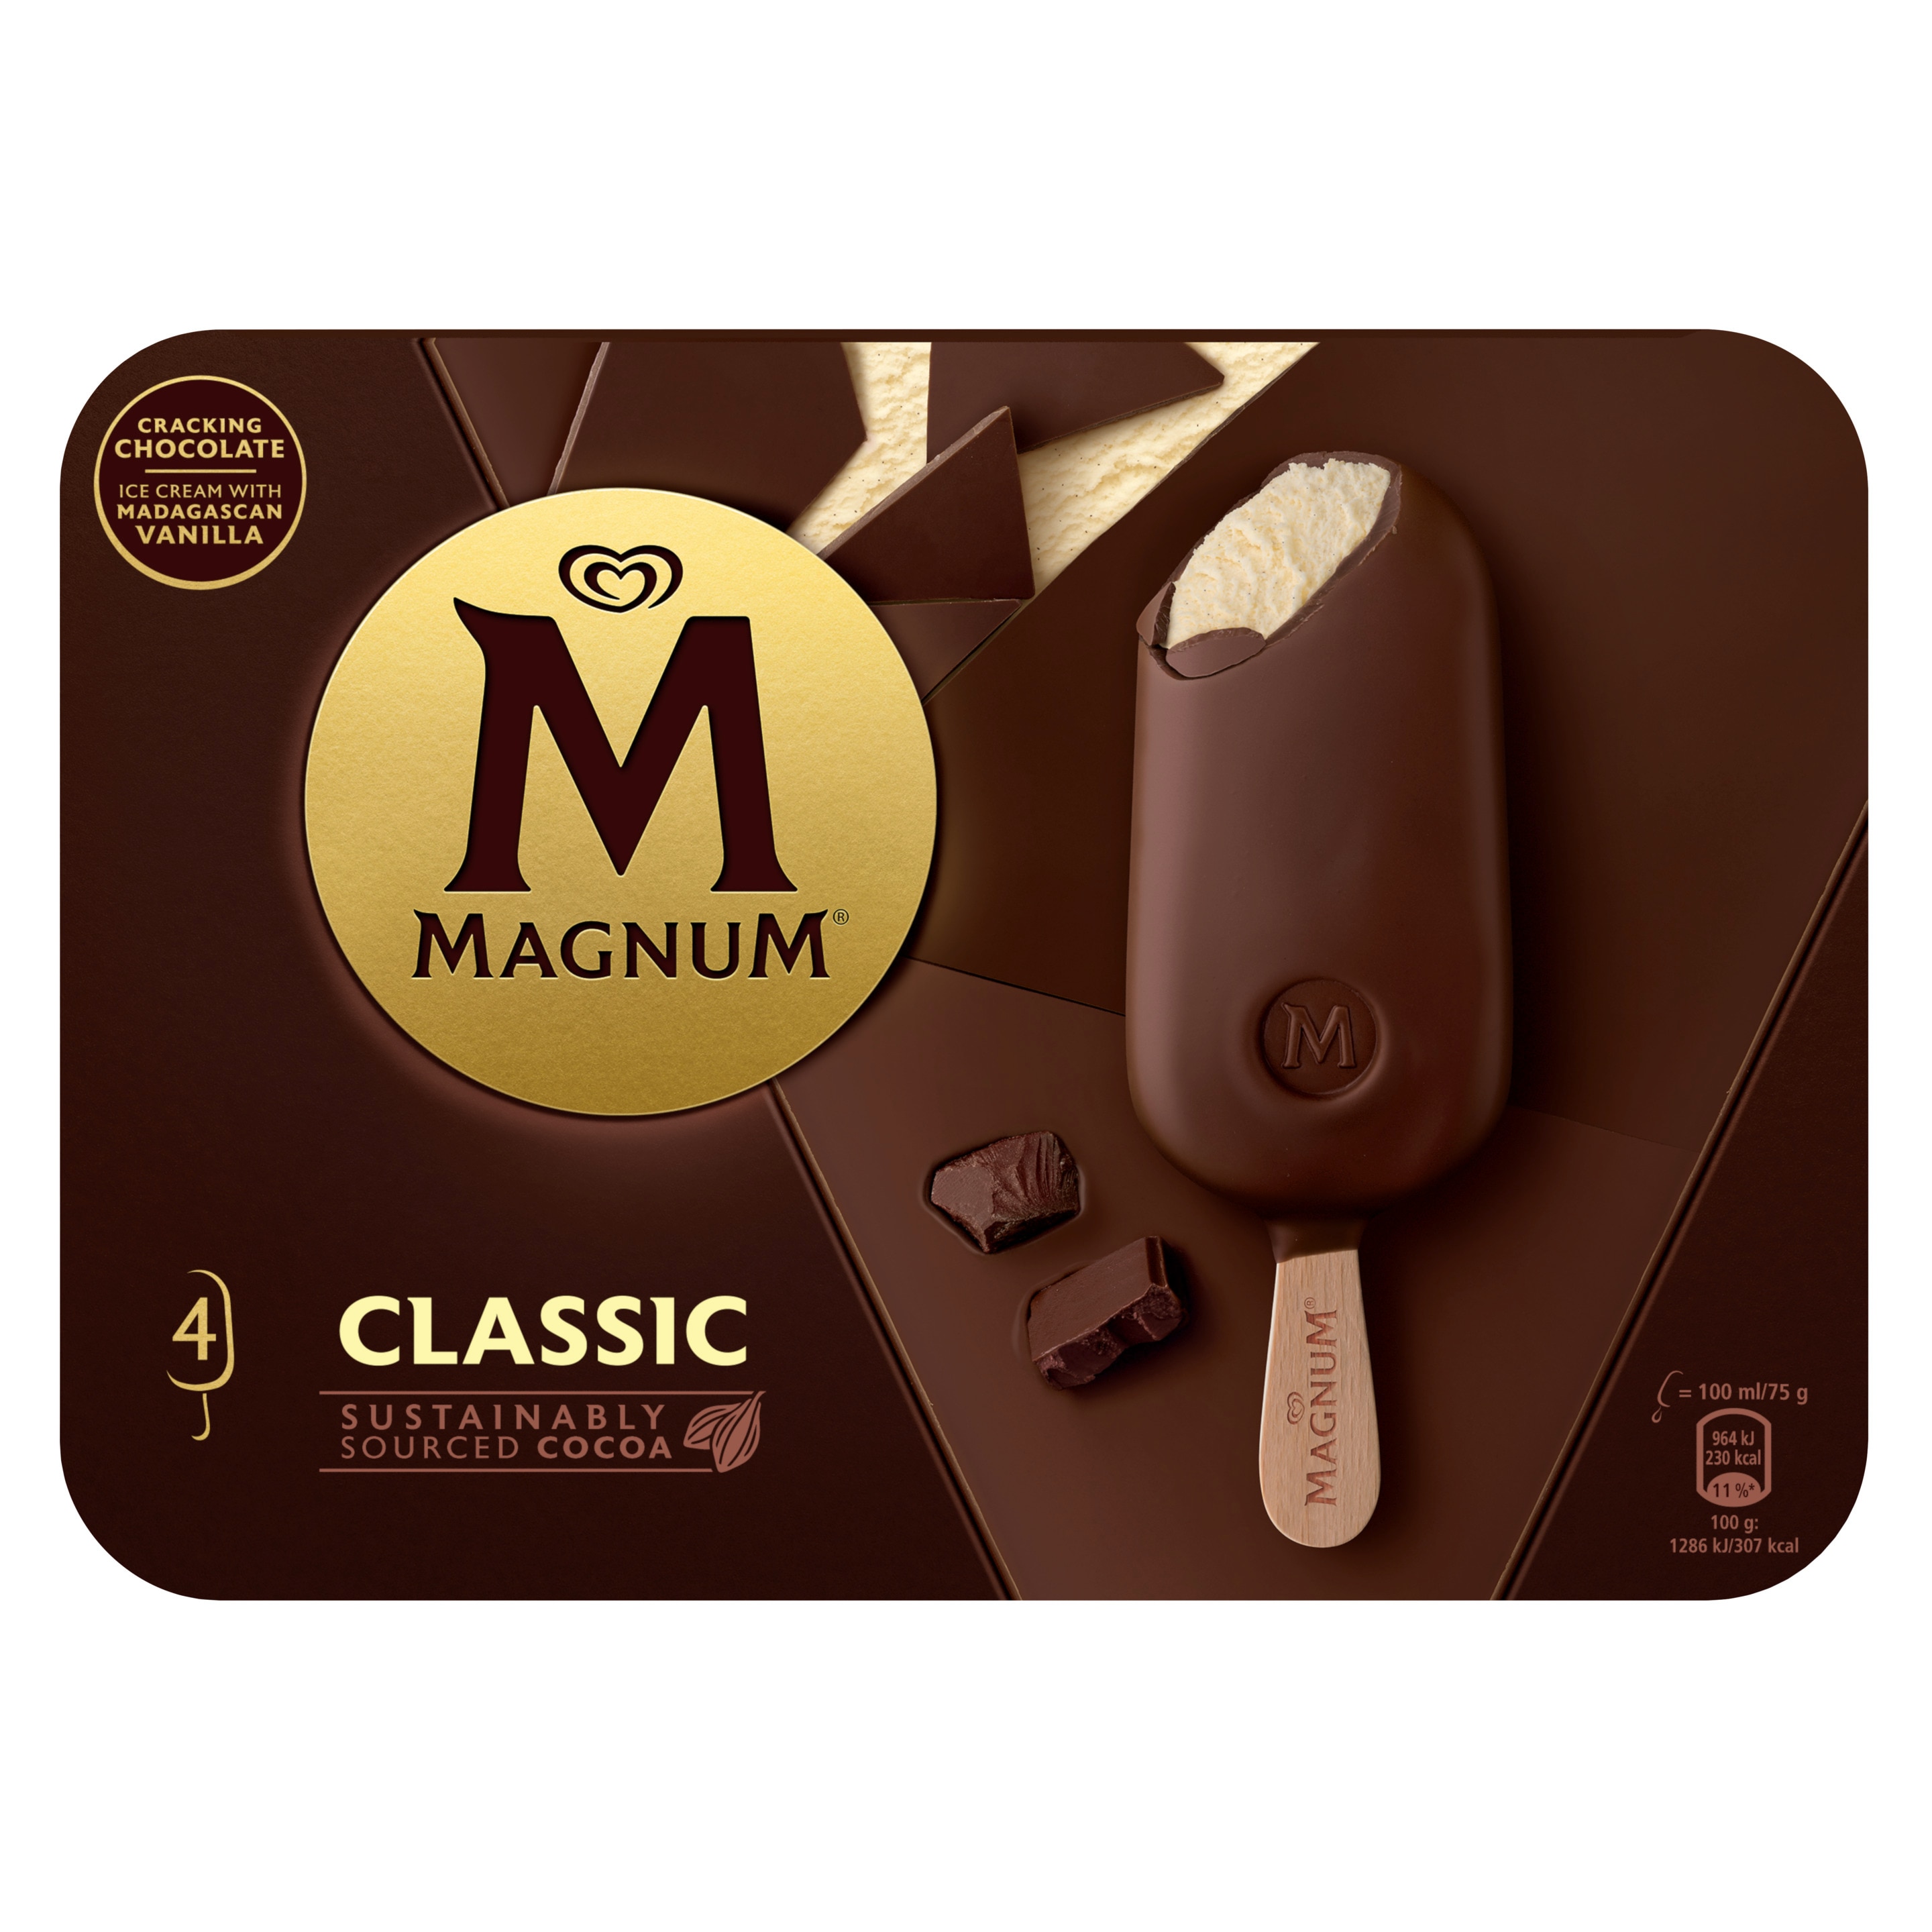 Magnum classic packaging